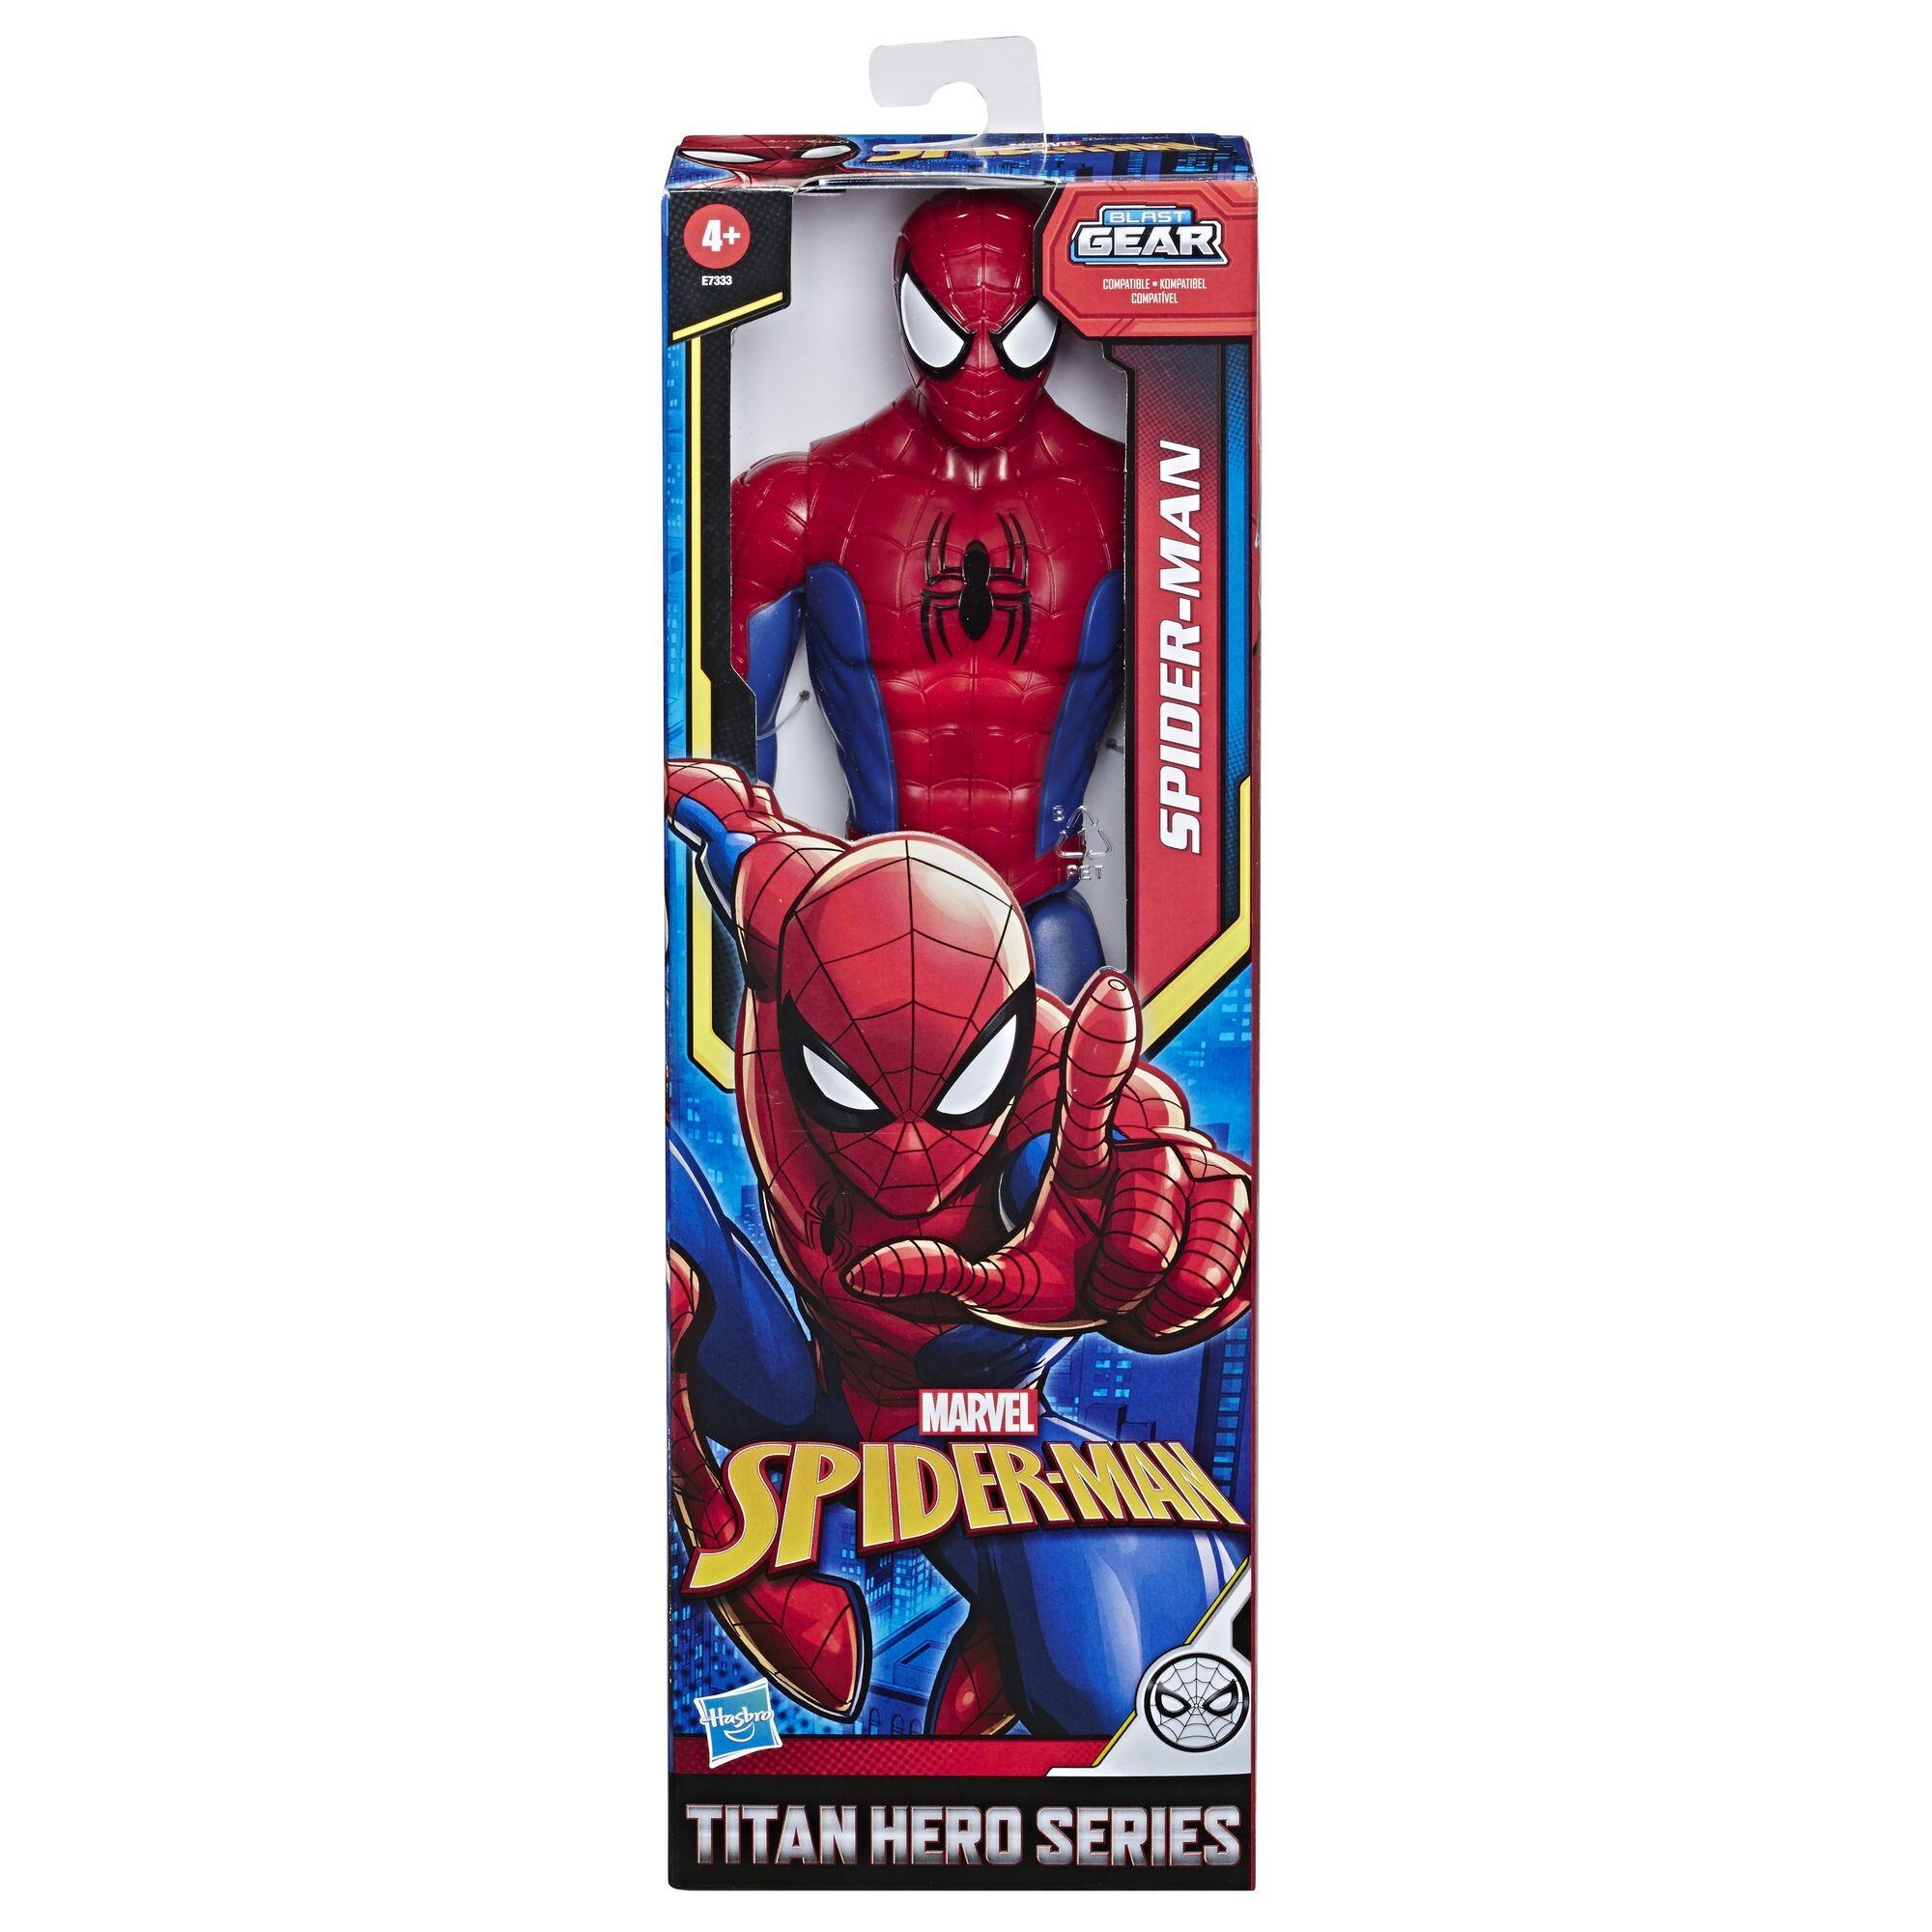 Spider-Man Titan Hero Series 12-Inch Spidey Action Figure